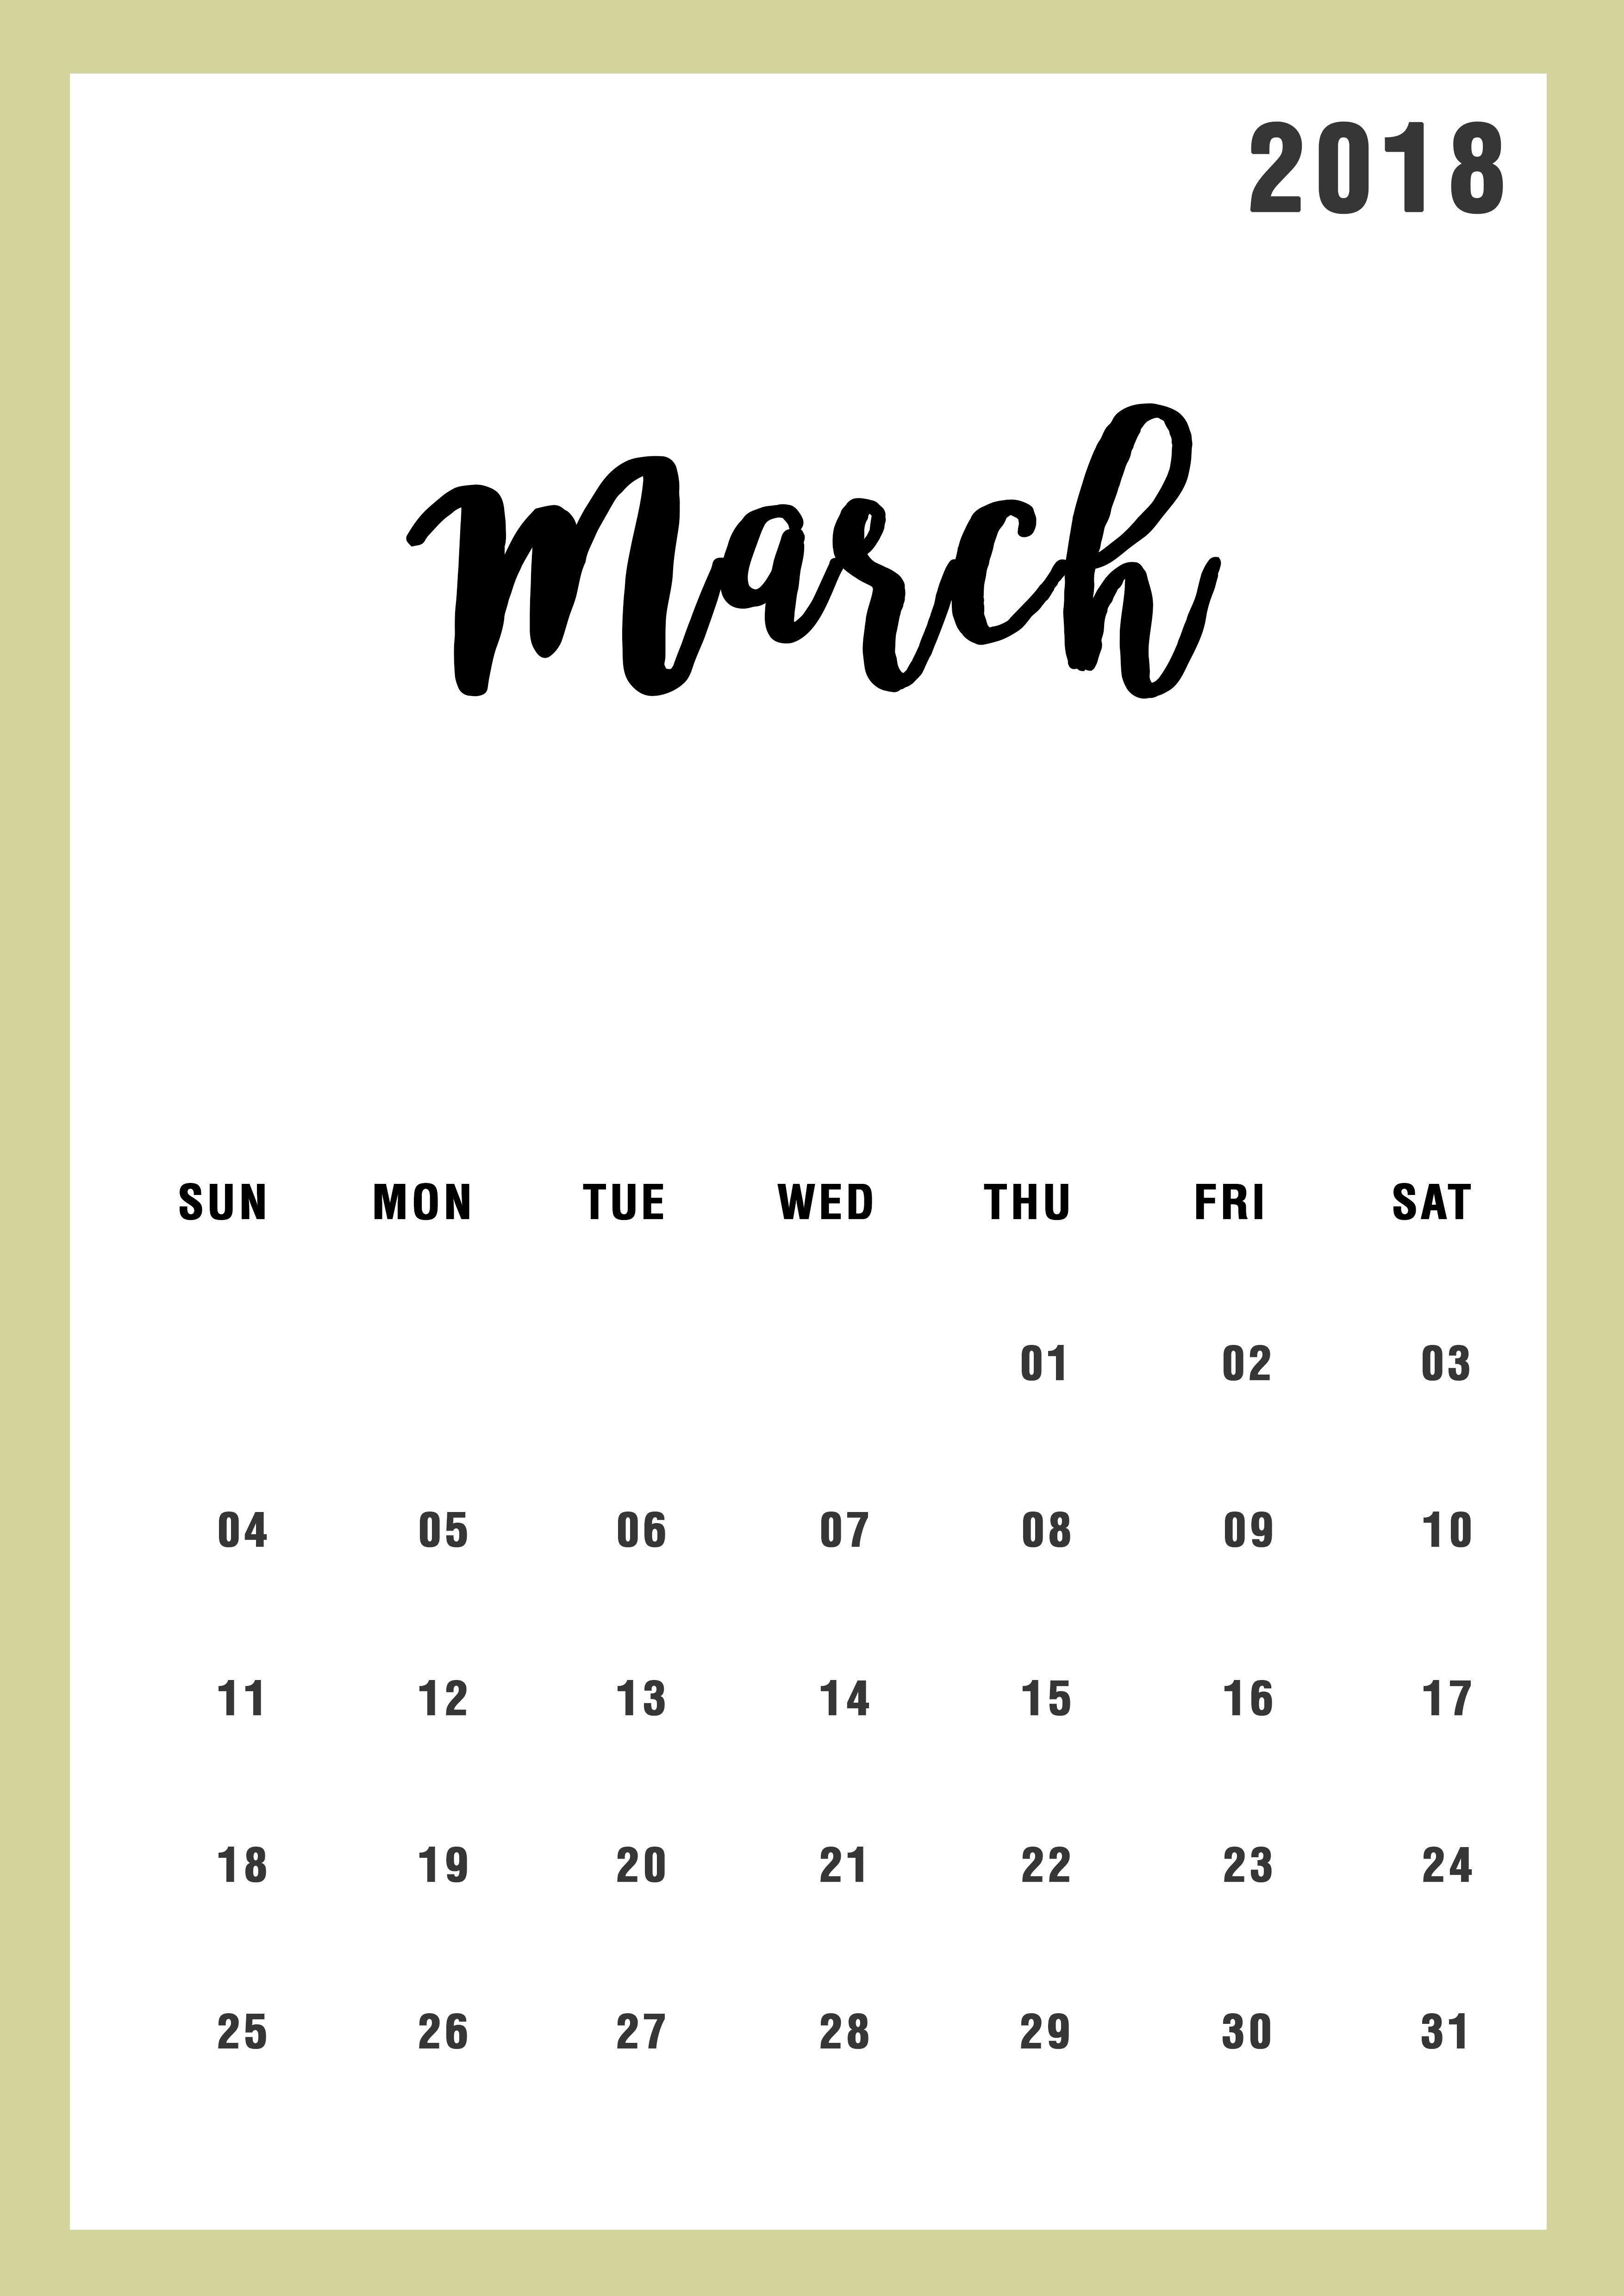 March 2018 Calendar design Calendar and Wallpaper Ideas